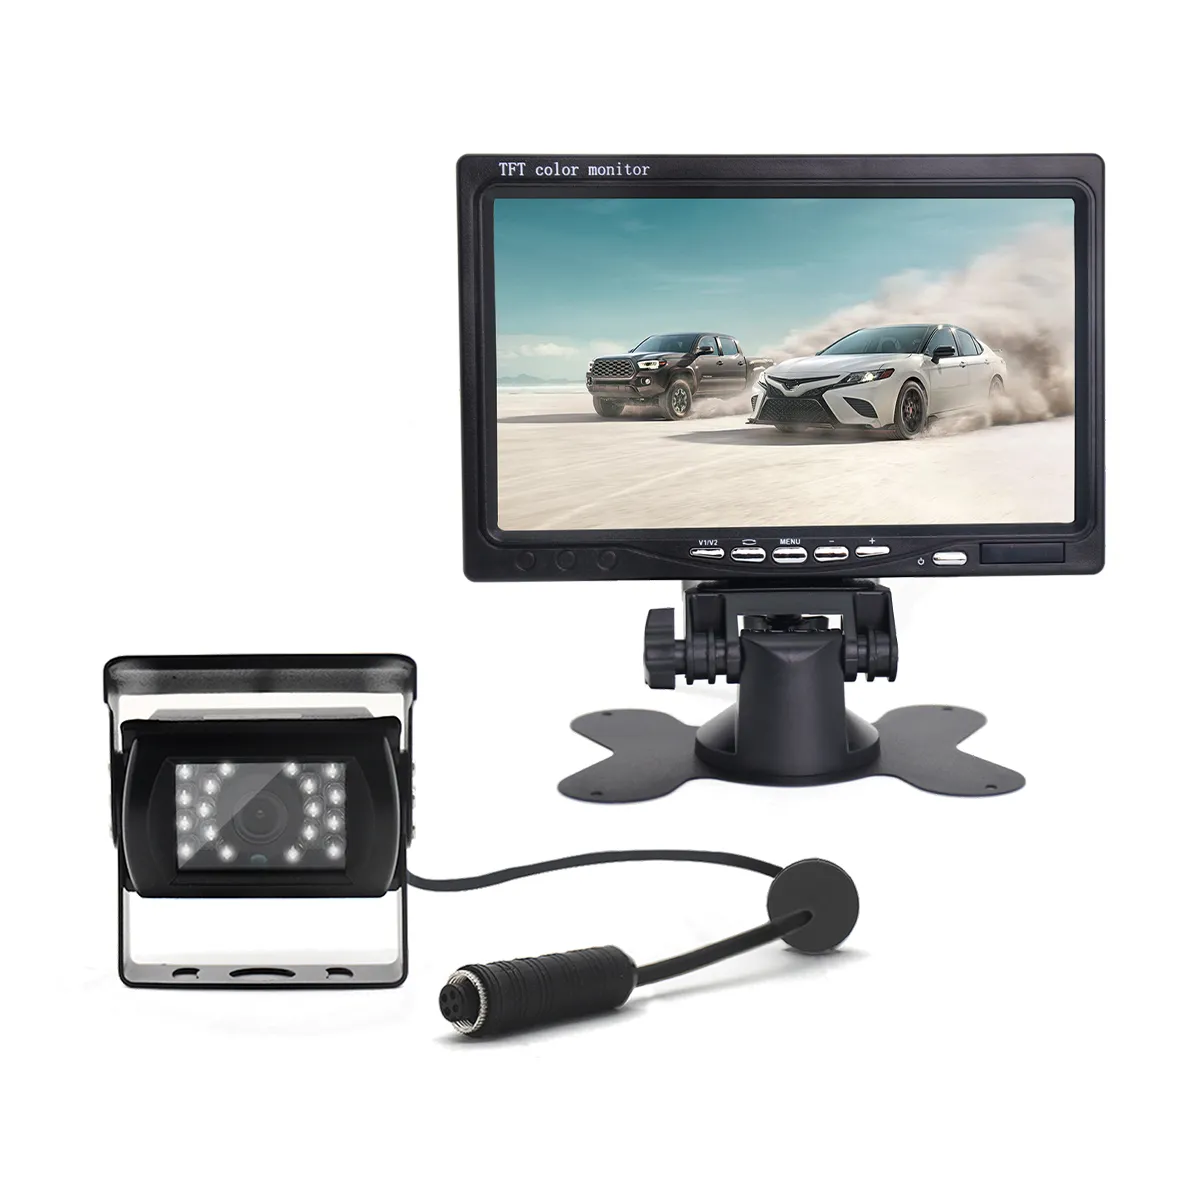 Pasokan pabrik 7 inci TFT LCD Monitor cermin mobil HD tampilan belakang untuk sistem kamera truk parkir